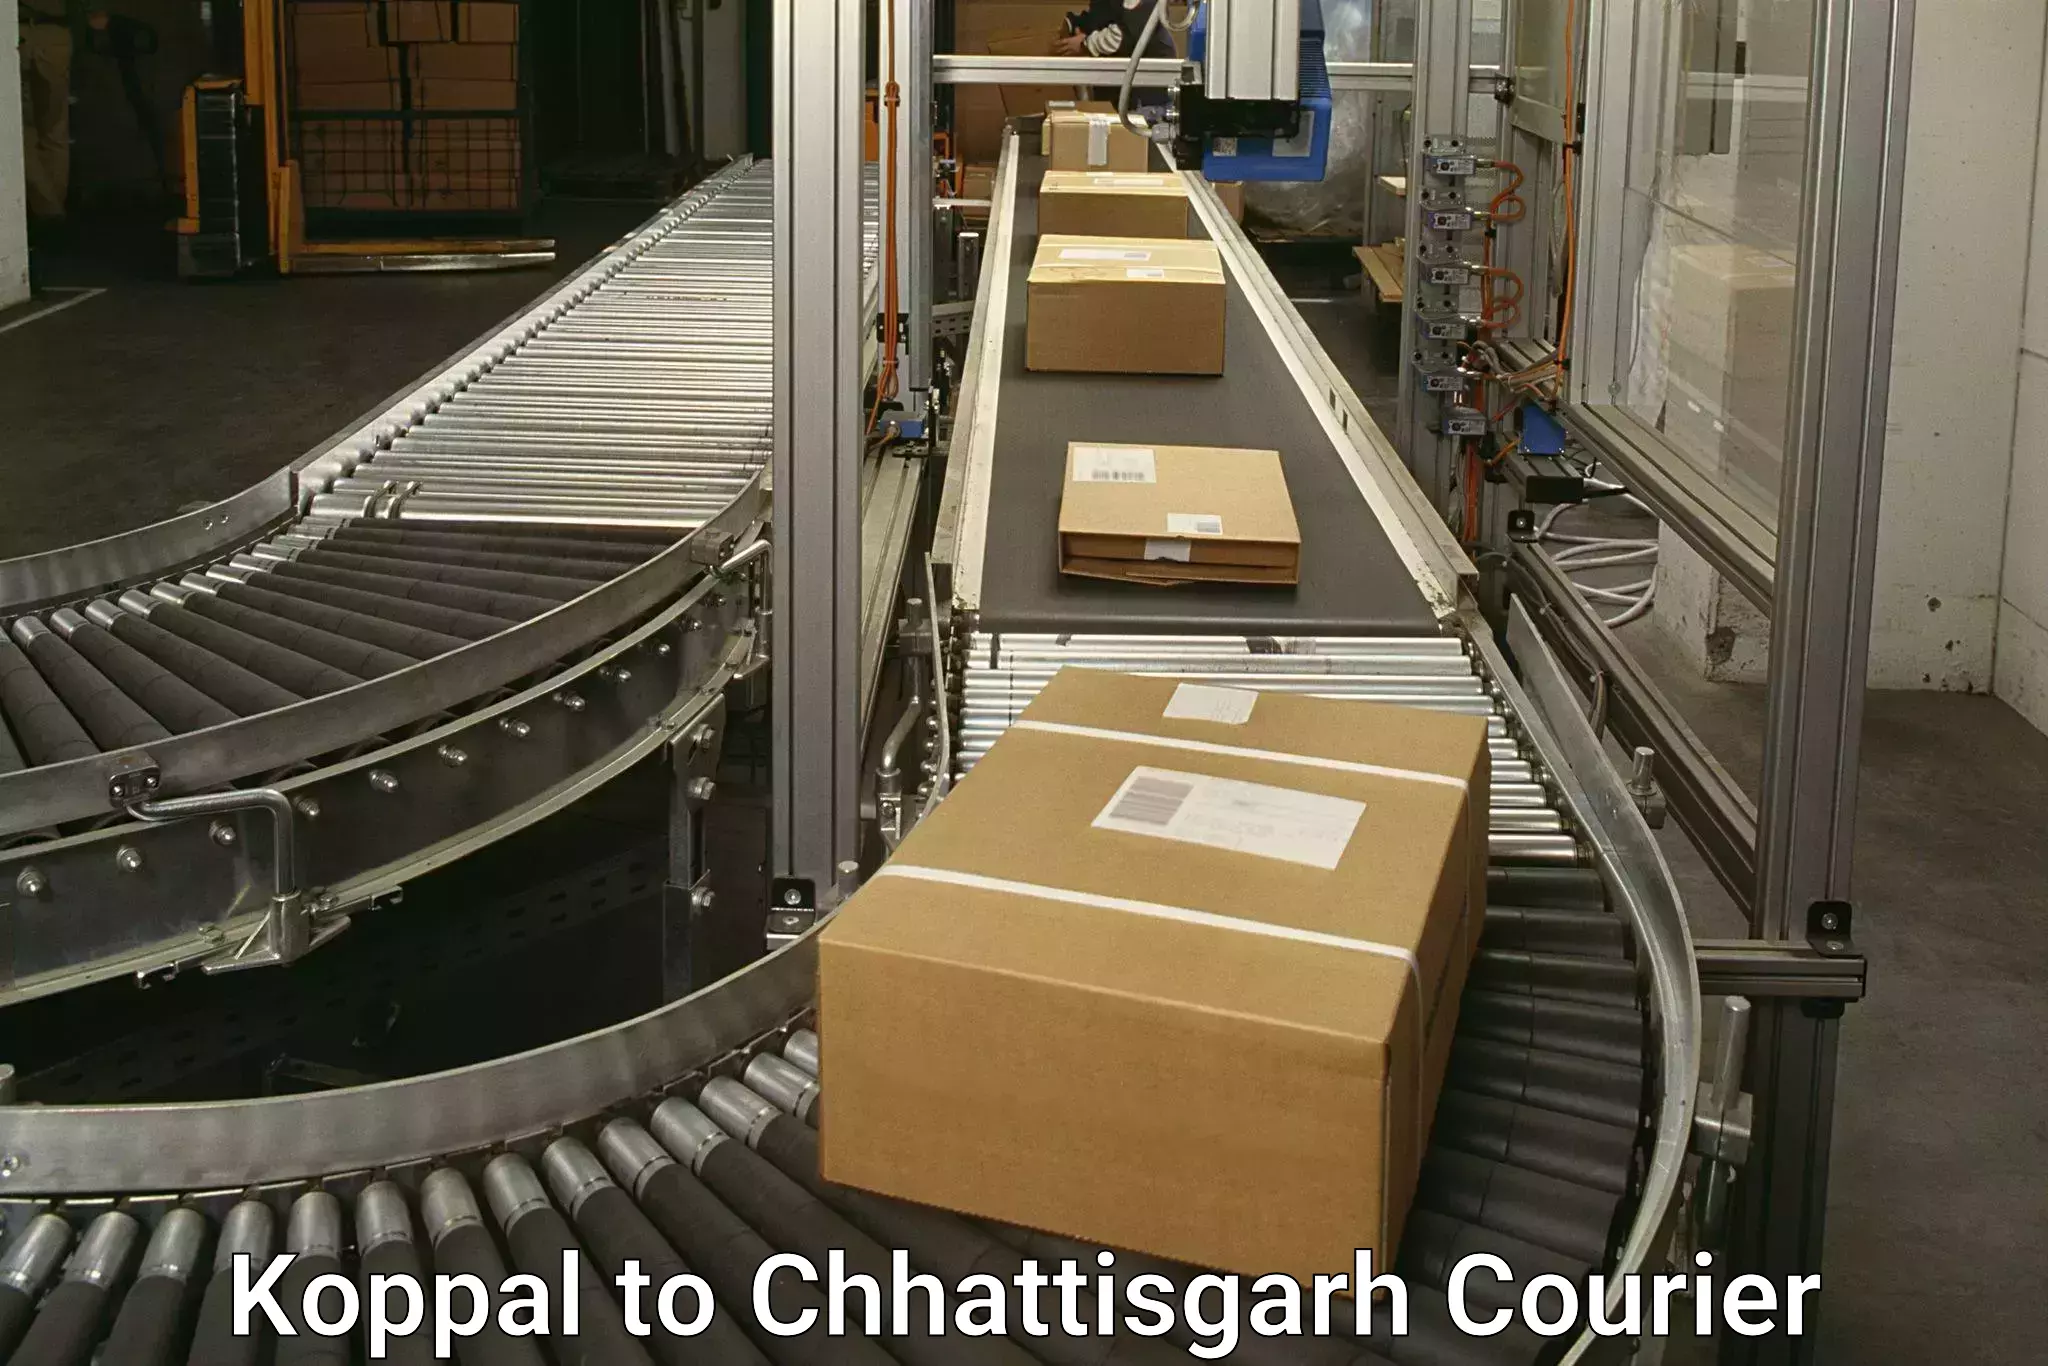 Advanced courier platforms in Koppal to Raigarh Chhattisgarh